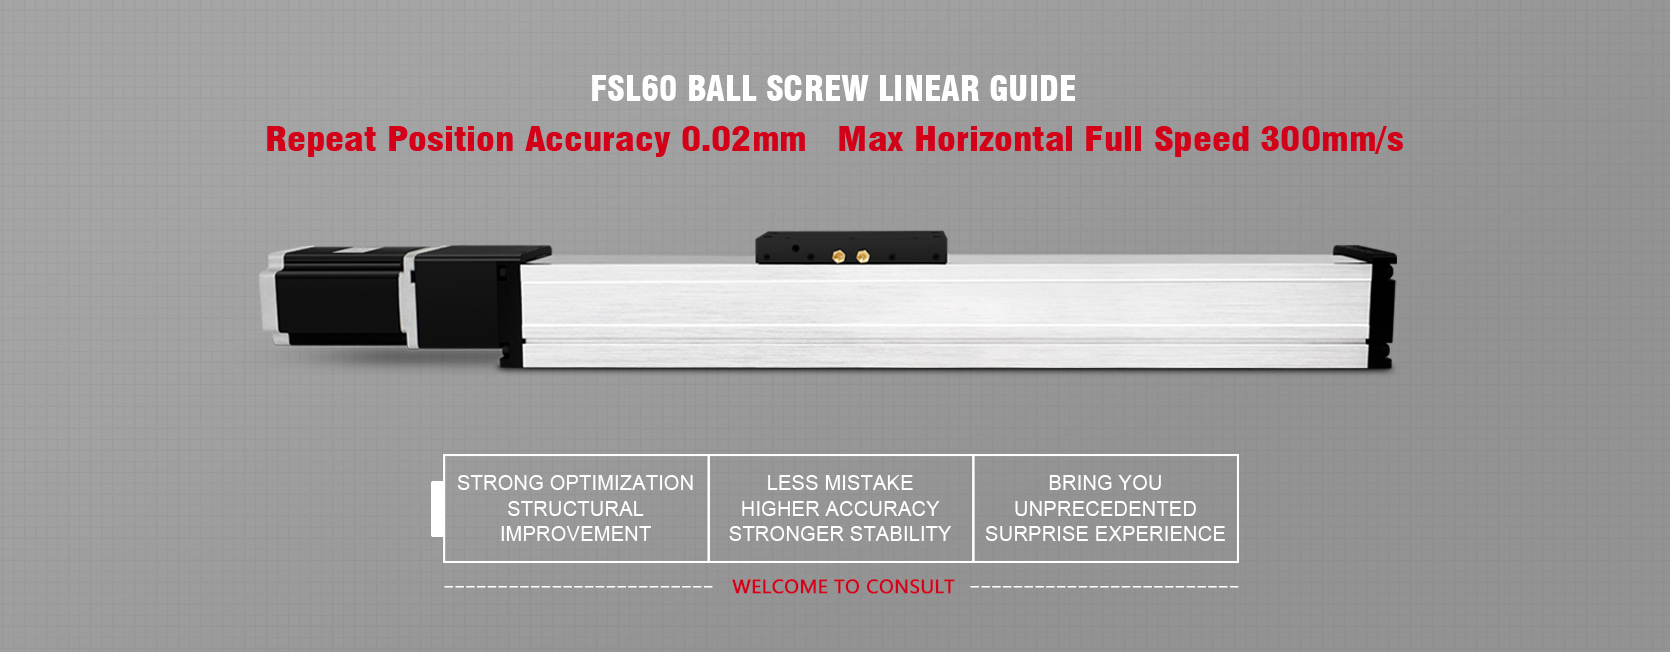 dustproof ball screw linear motion guide